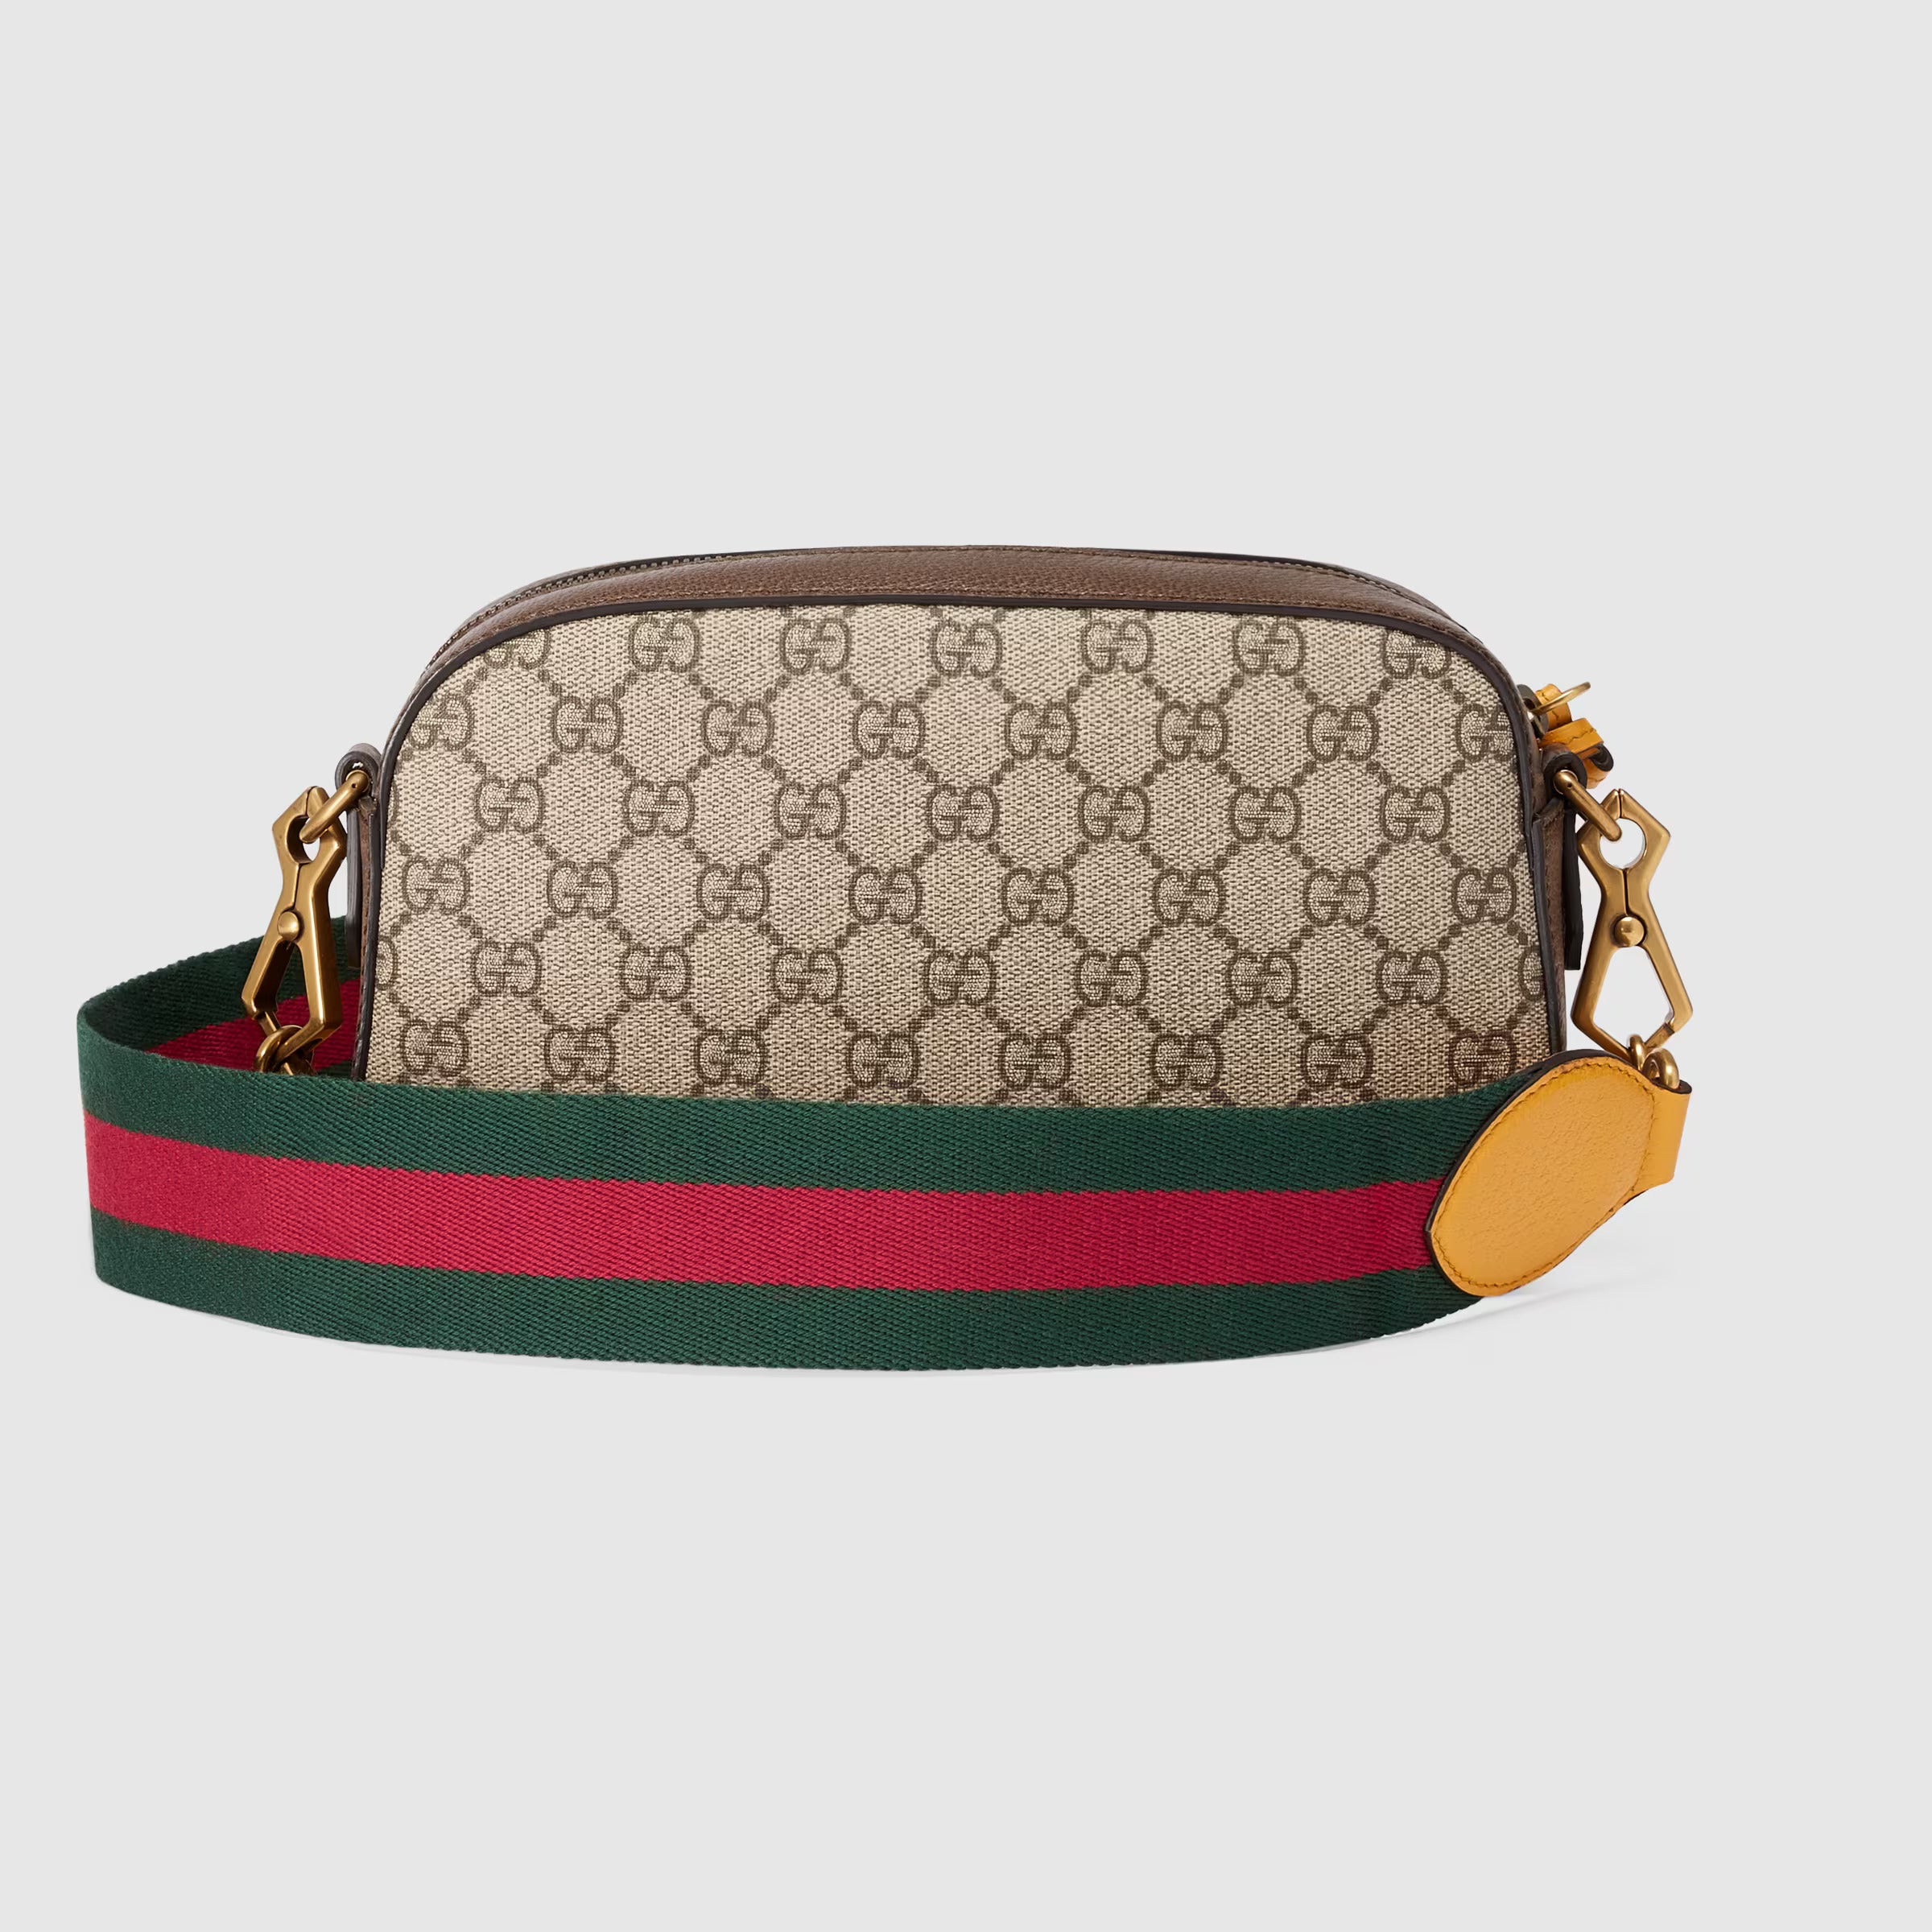 Gucci Neo Vintage GG Supreme Messenger Bag (Beige & Ebony)